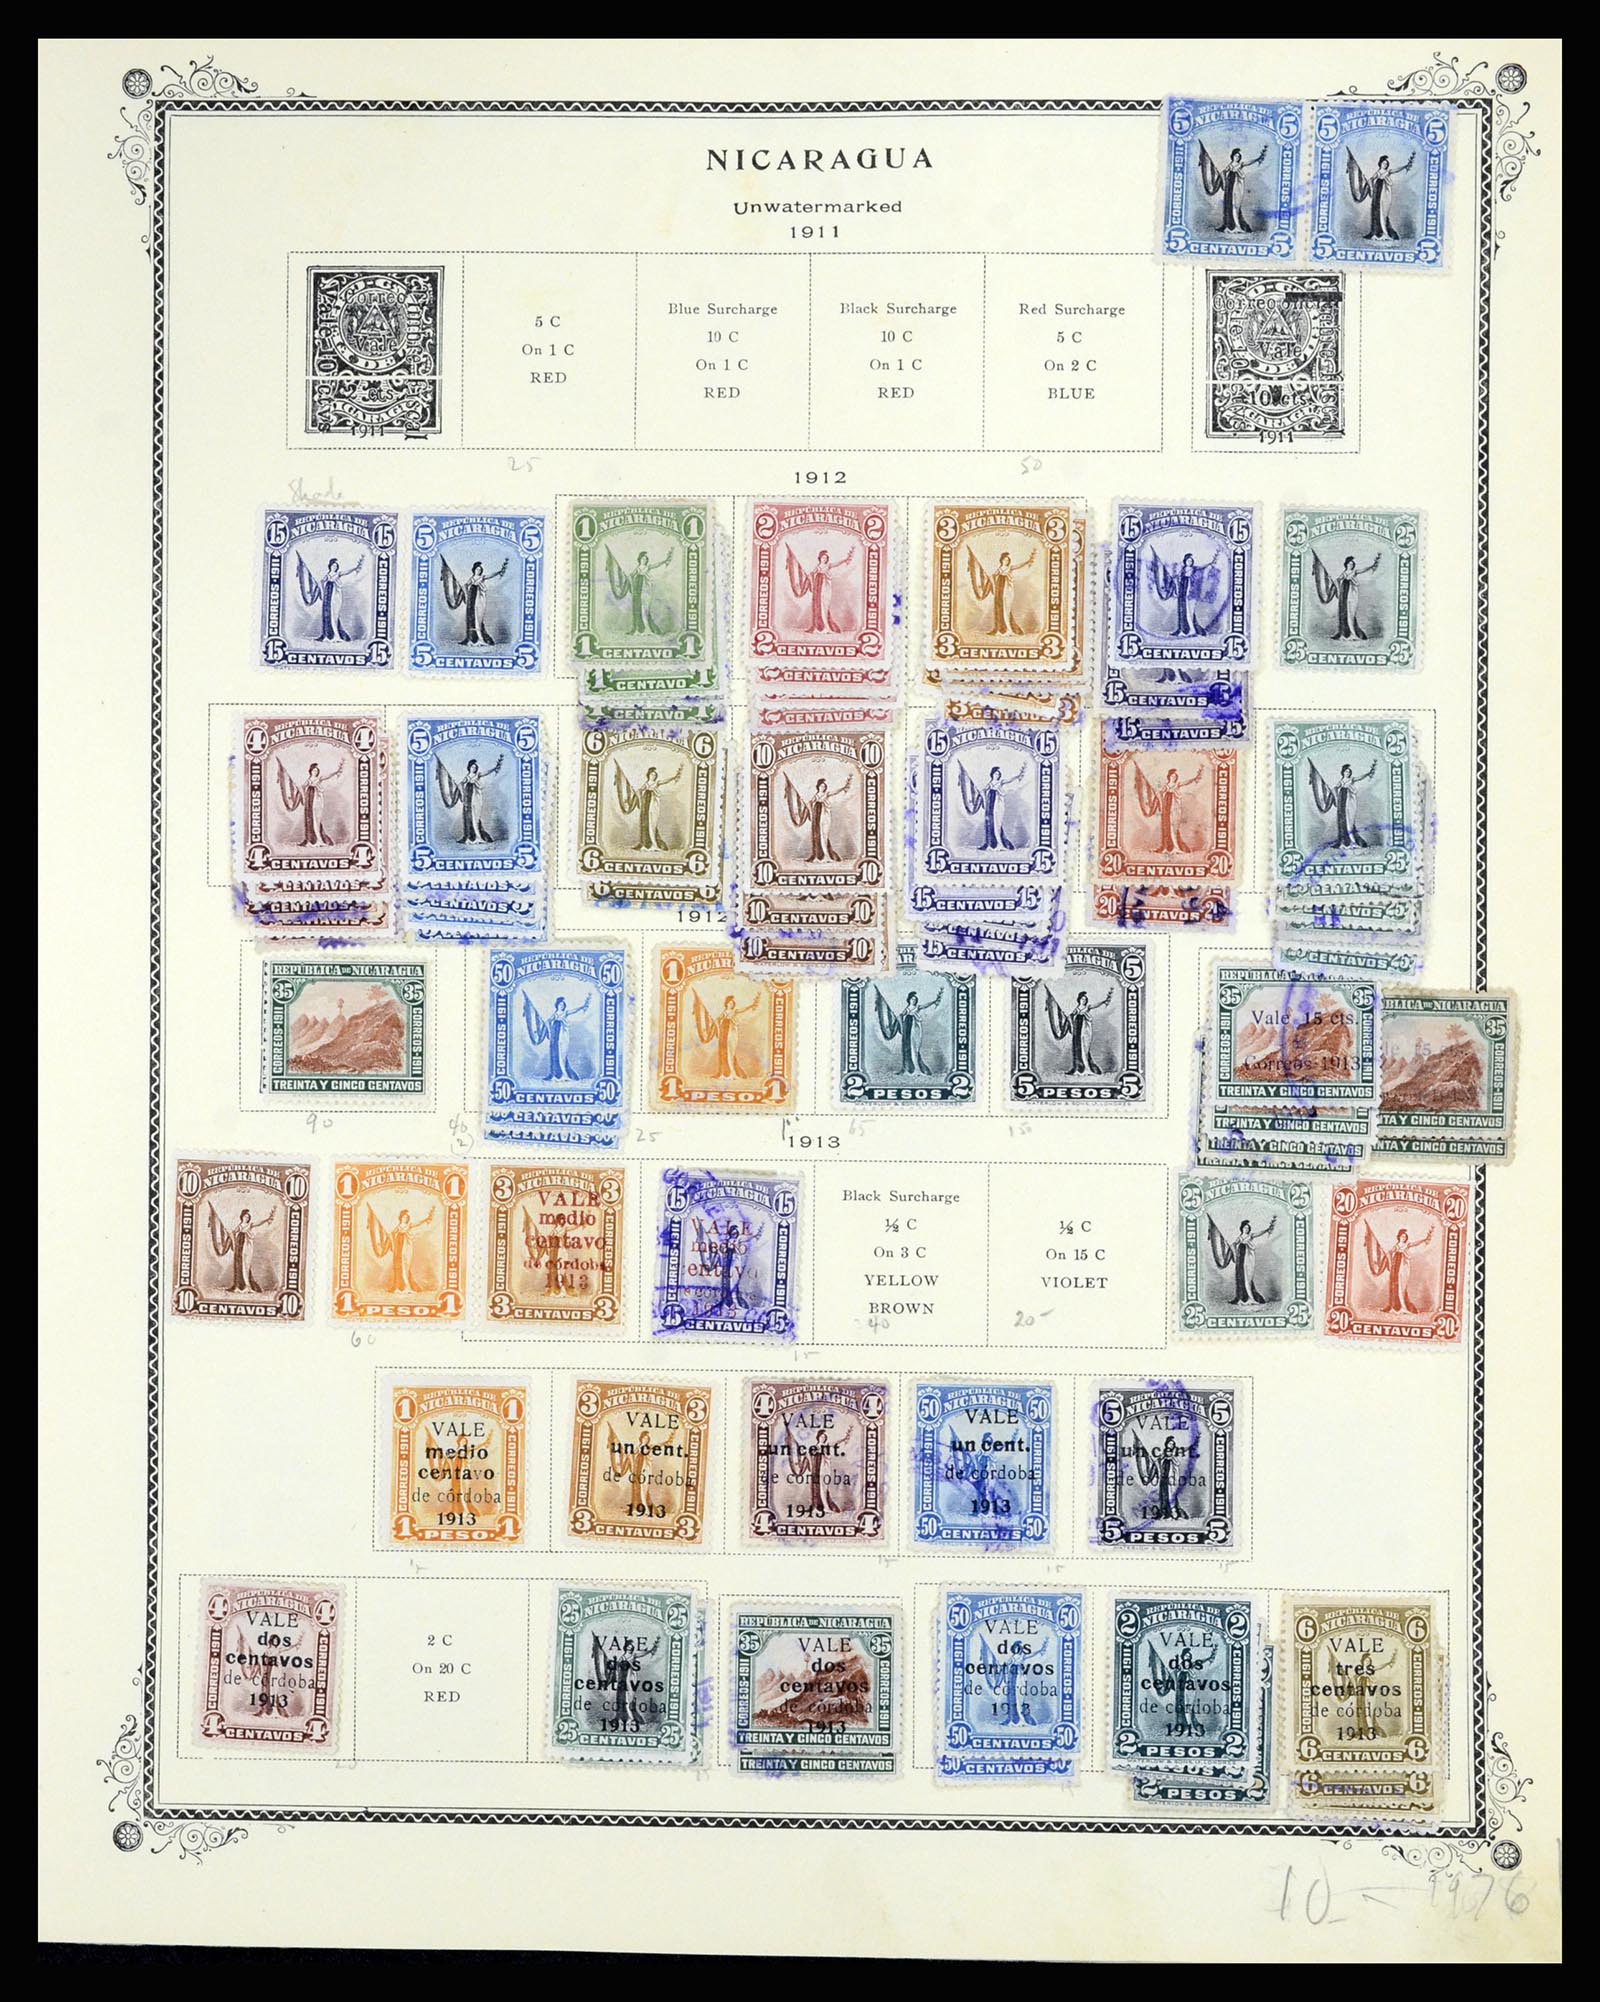 36494 020 - Stamp collection 36494 Nicaragua 1902-1945.